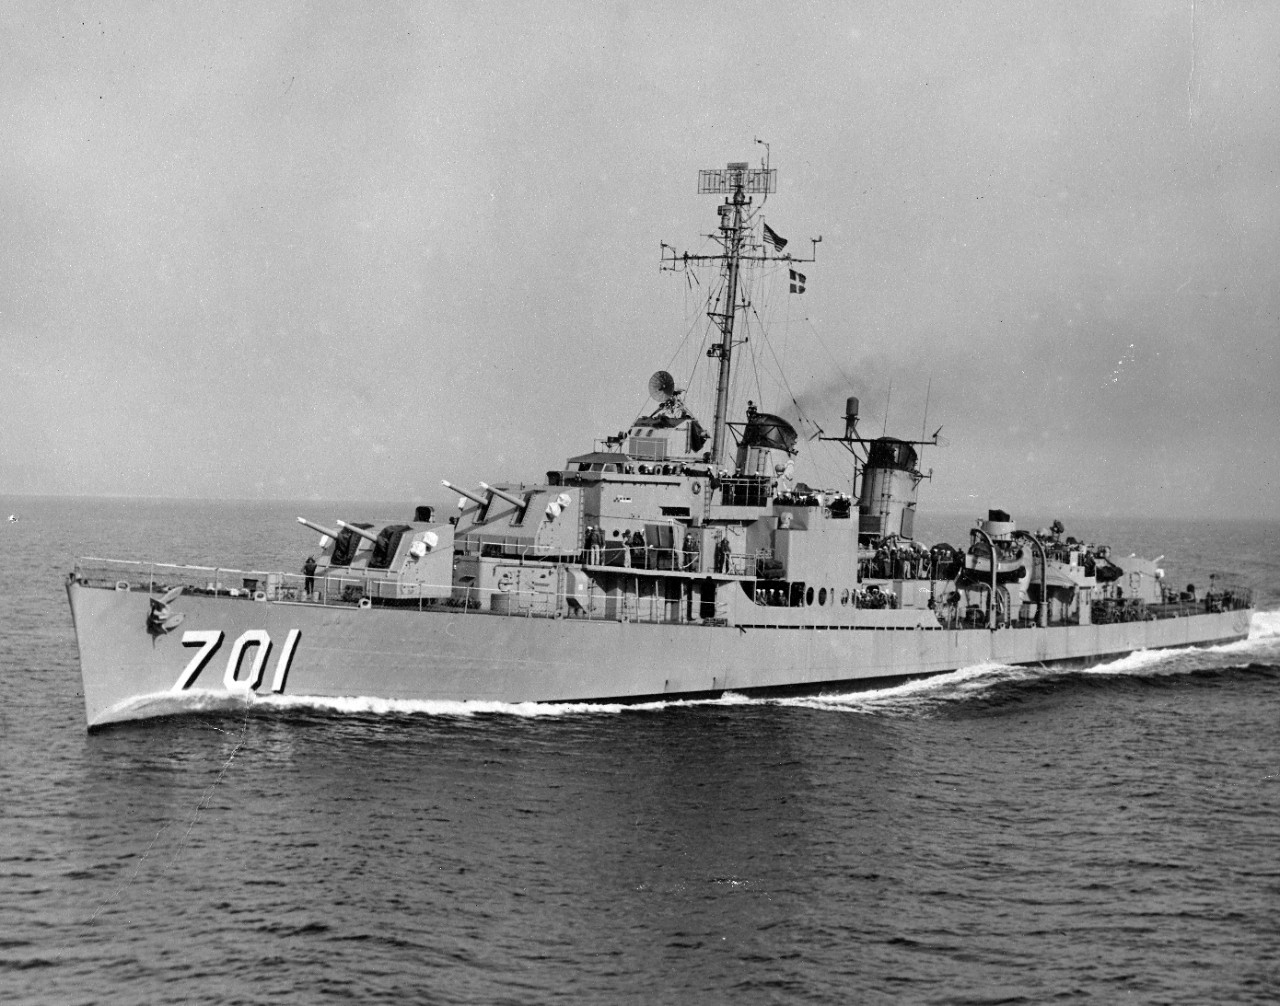 USS John W. Weeks (DD-701)